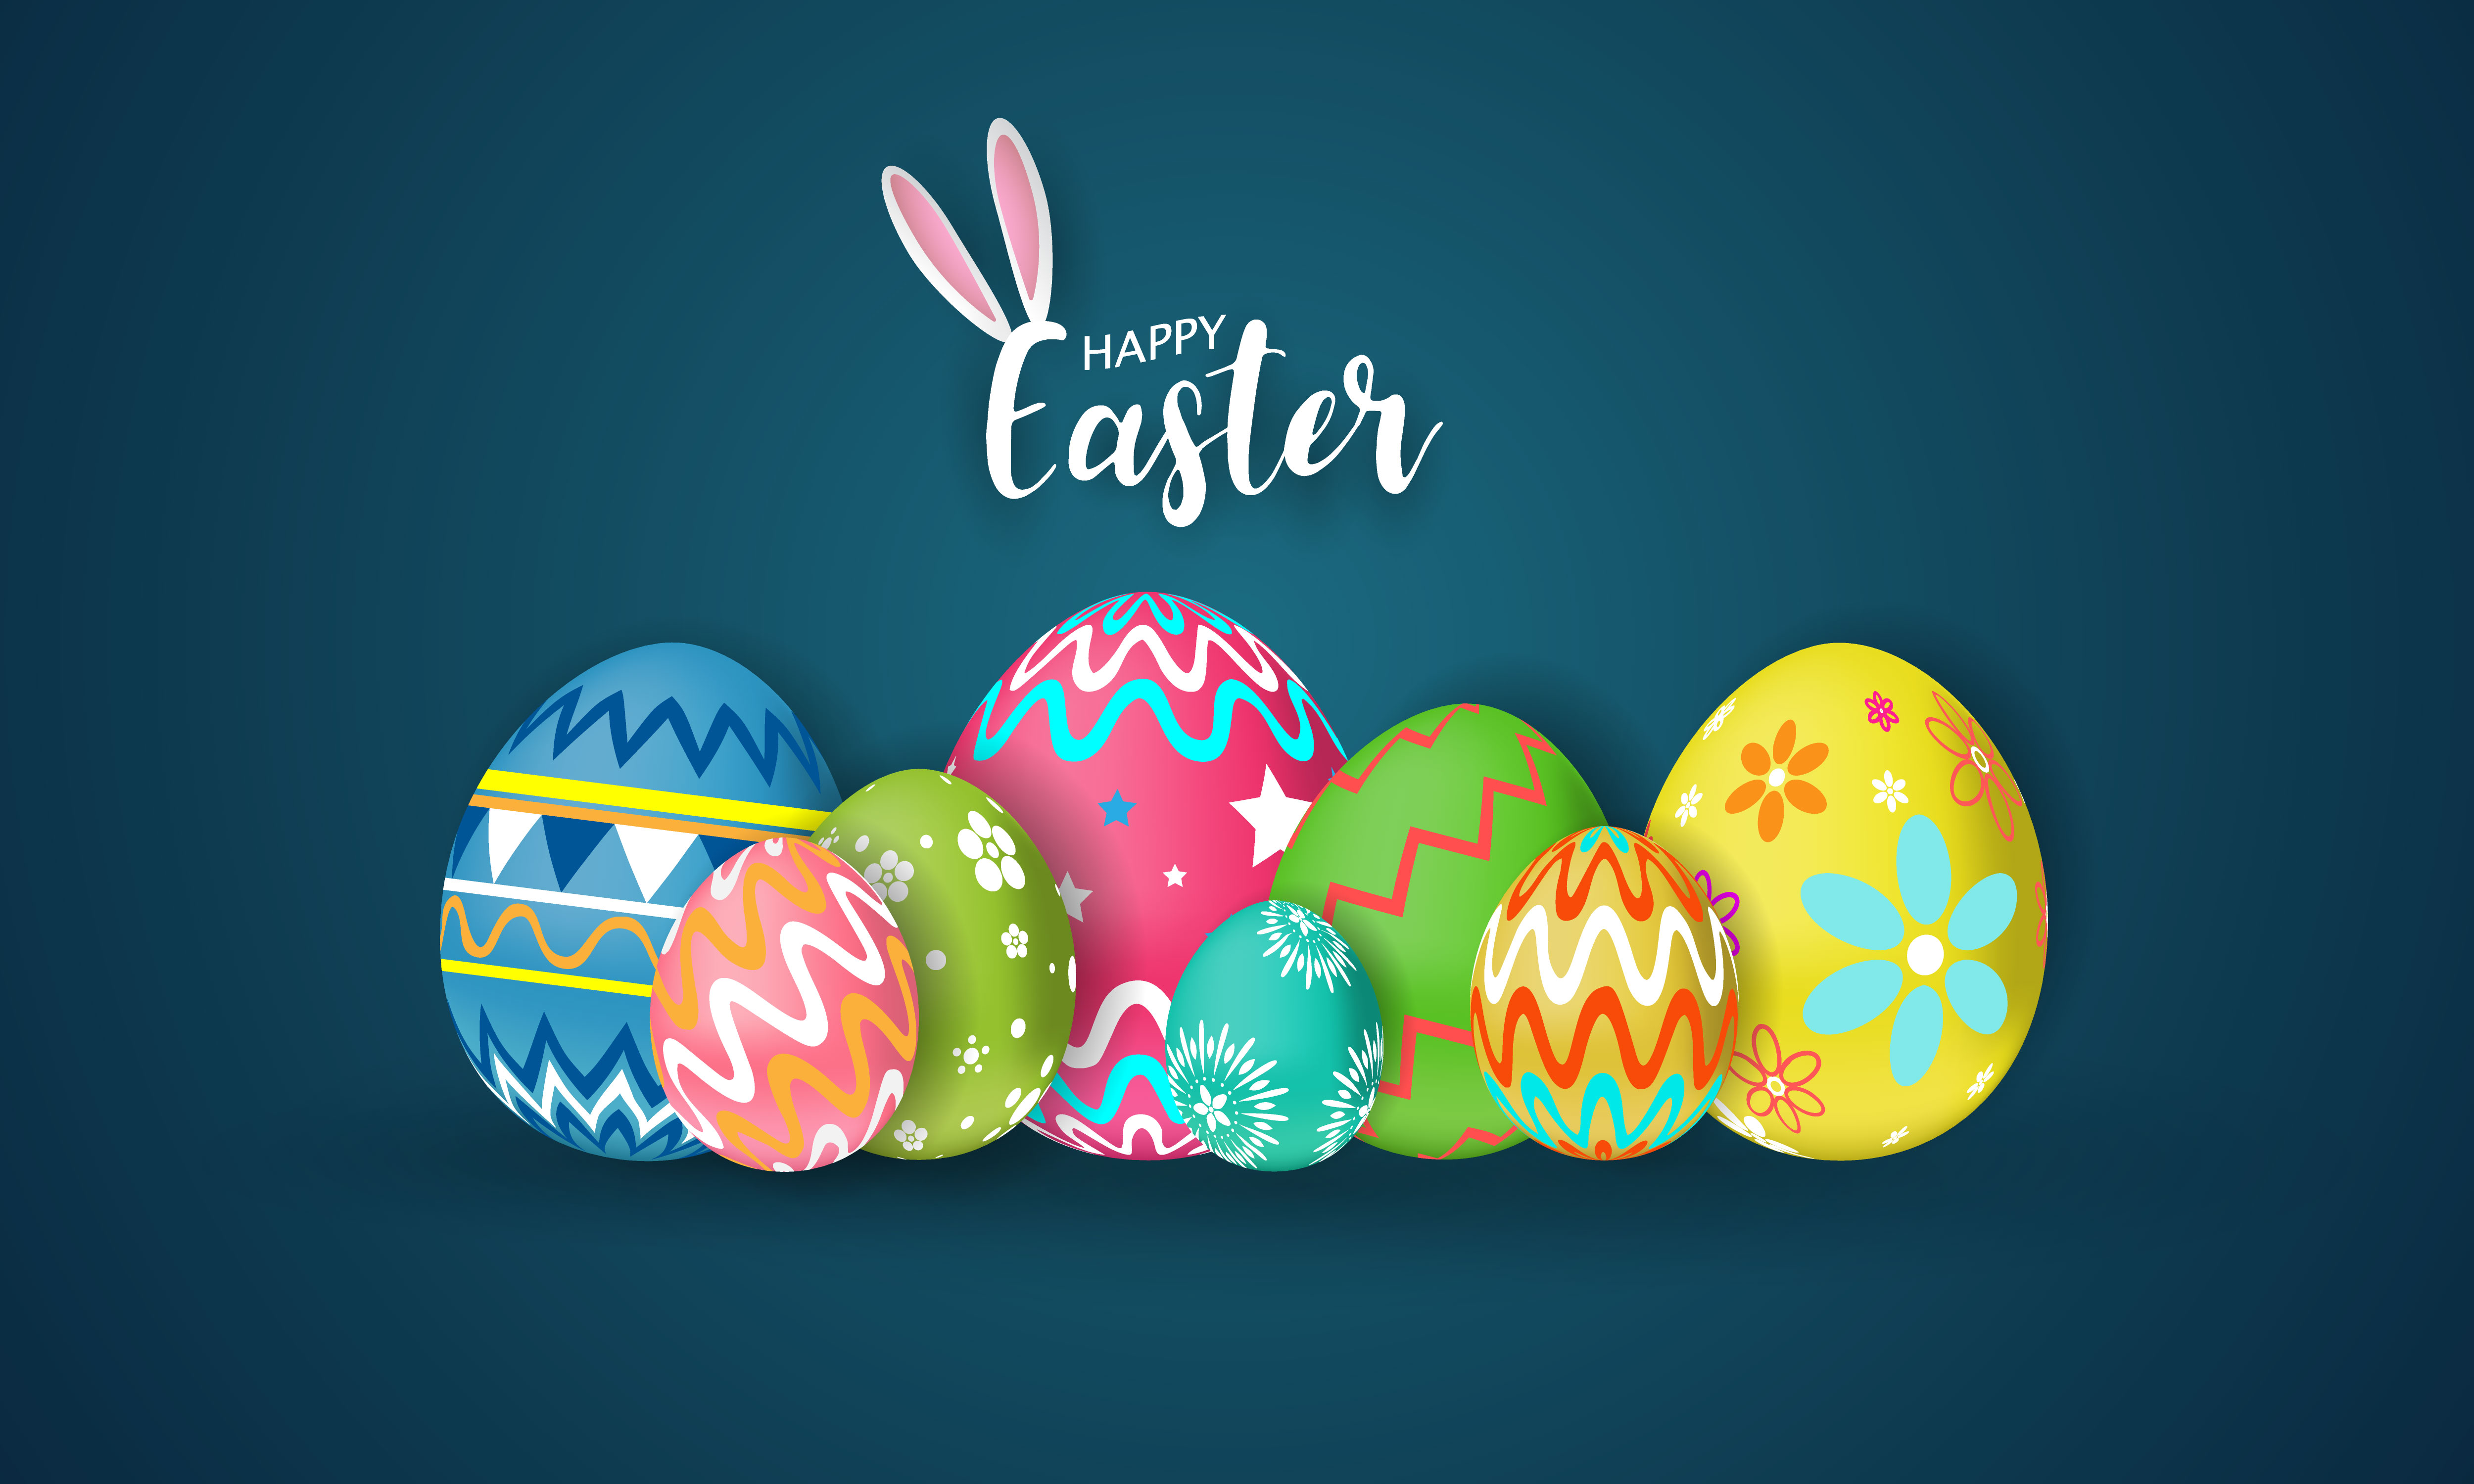 Muốn tìm nền tảng Easter vui vẻ để đón mừng ngày lễ này cùng gia đình và bạn bè? Chúng tôi cung cấp những bức ảnh đầy màu sắc và sinh động để bạn có thể dễ dàng chia sẻ với người thân và bạn bè của mình. Hãy đến với chúng tôi để tìm kiếm những bức ảnh đẹp và ý nghĩa nhất.